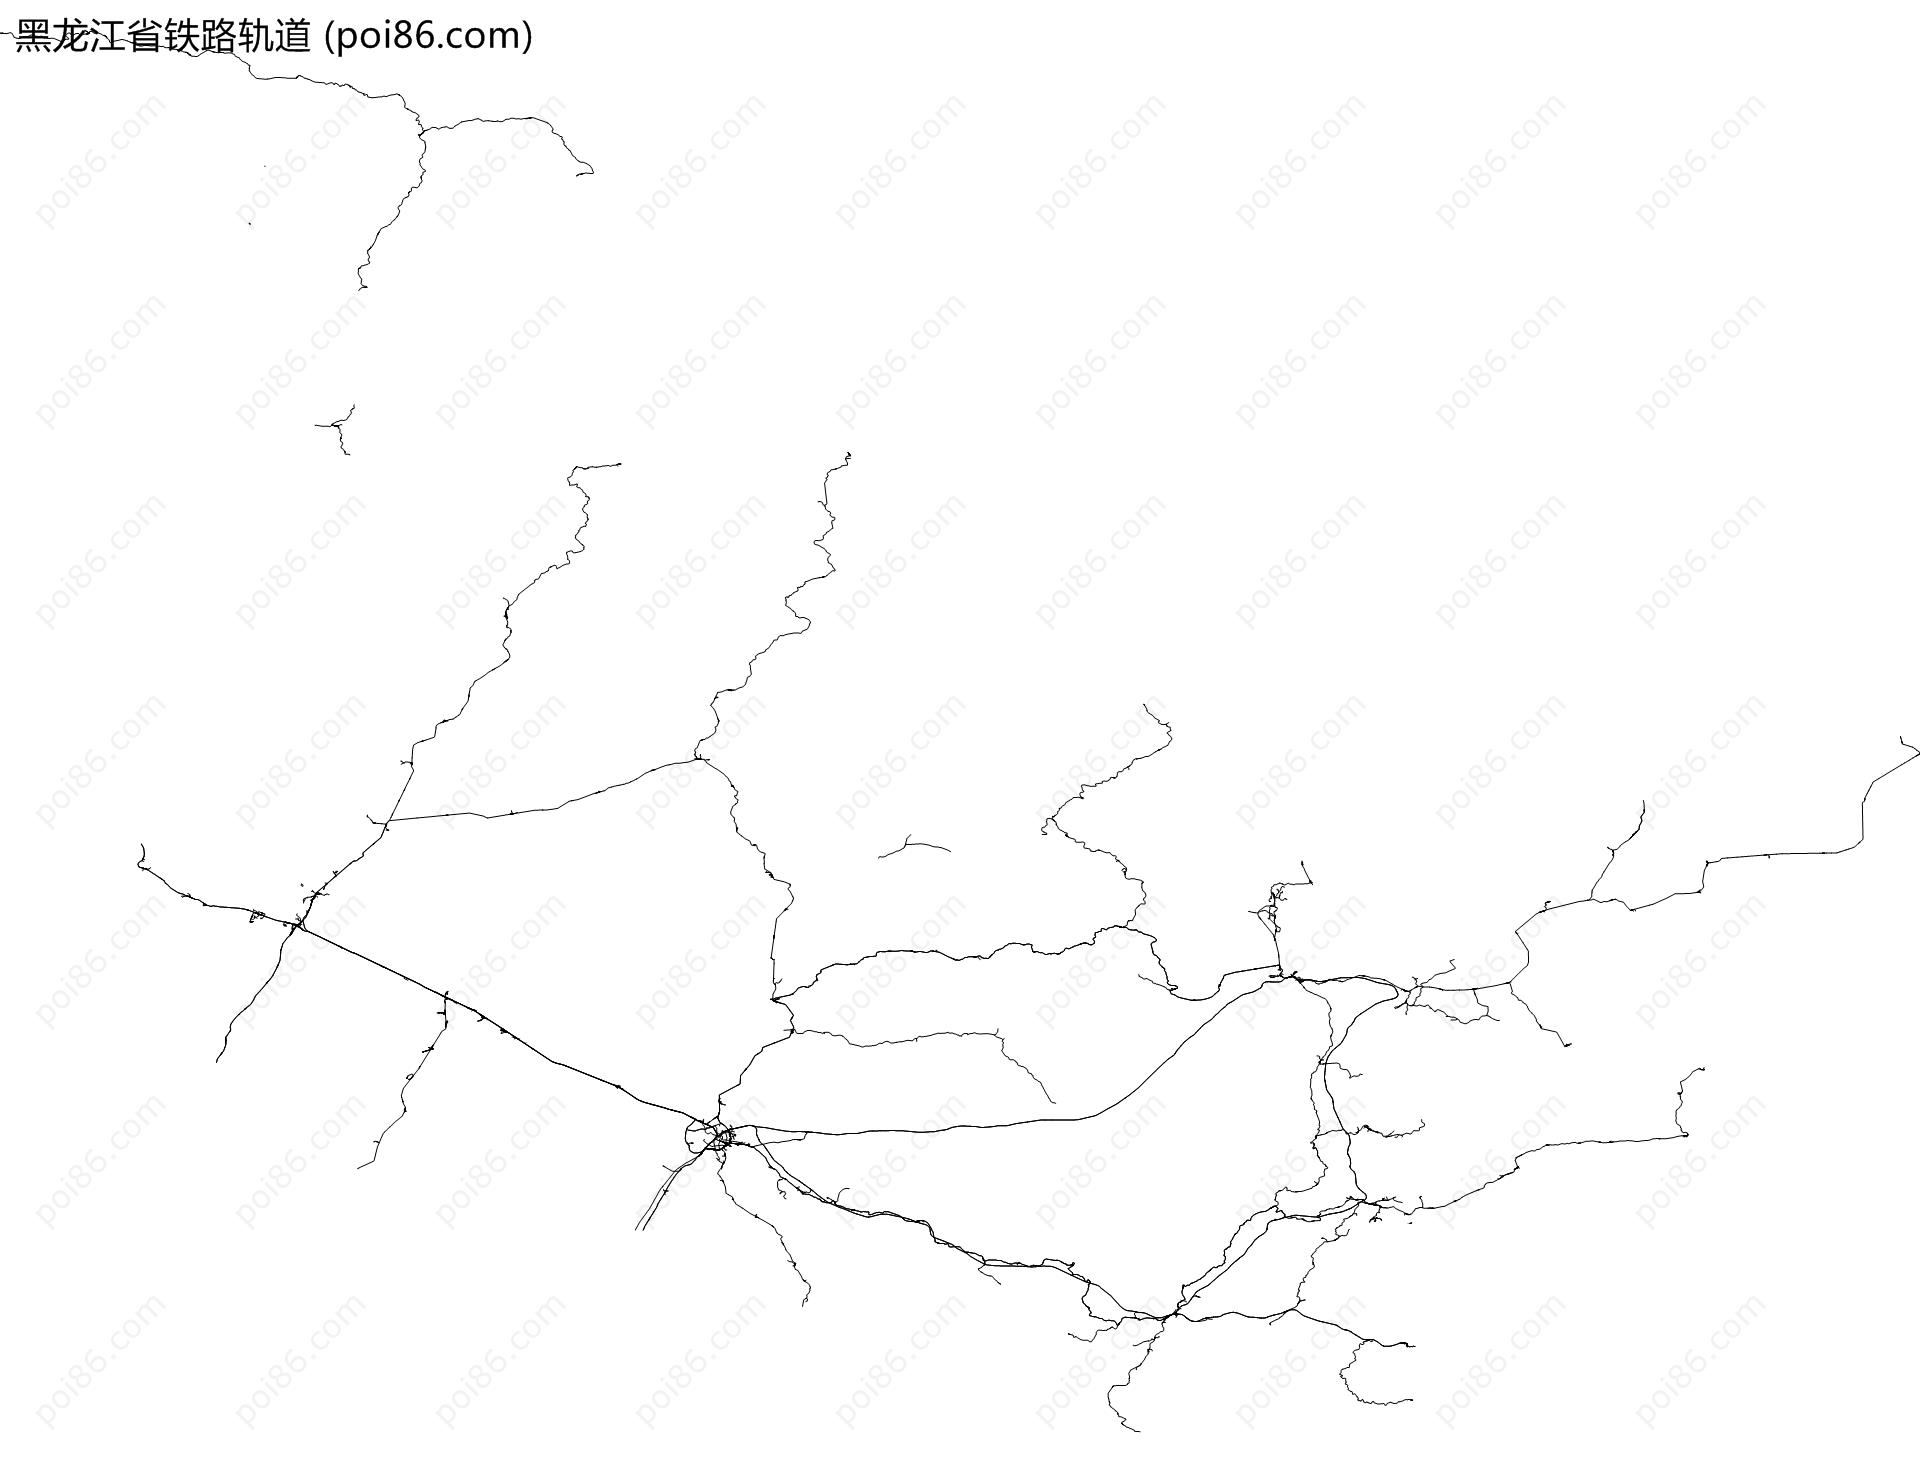 黑龙江省铁路轨道地图